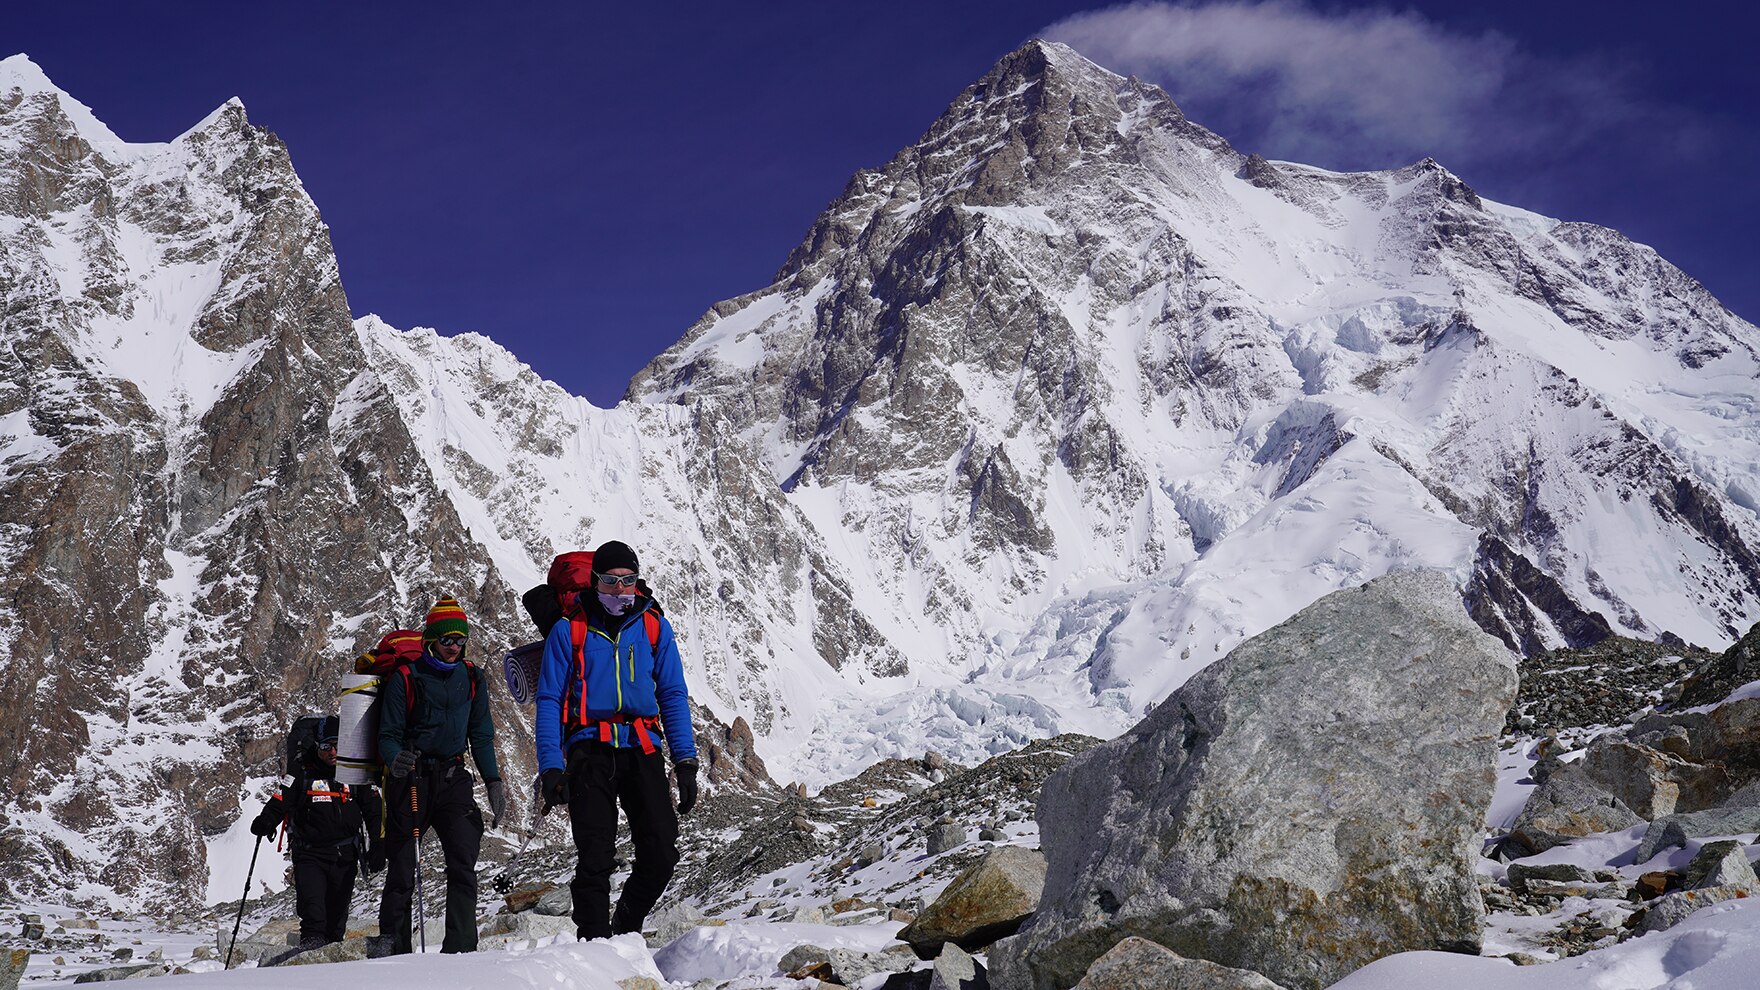 Tauche ein ins Herz der polnischen K2-Expedition.